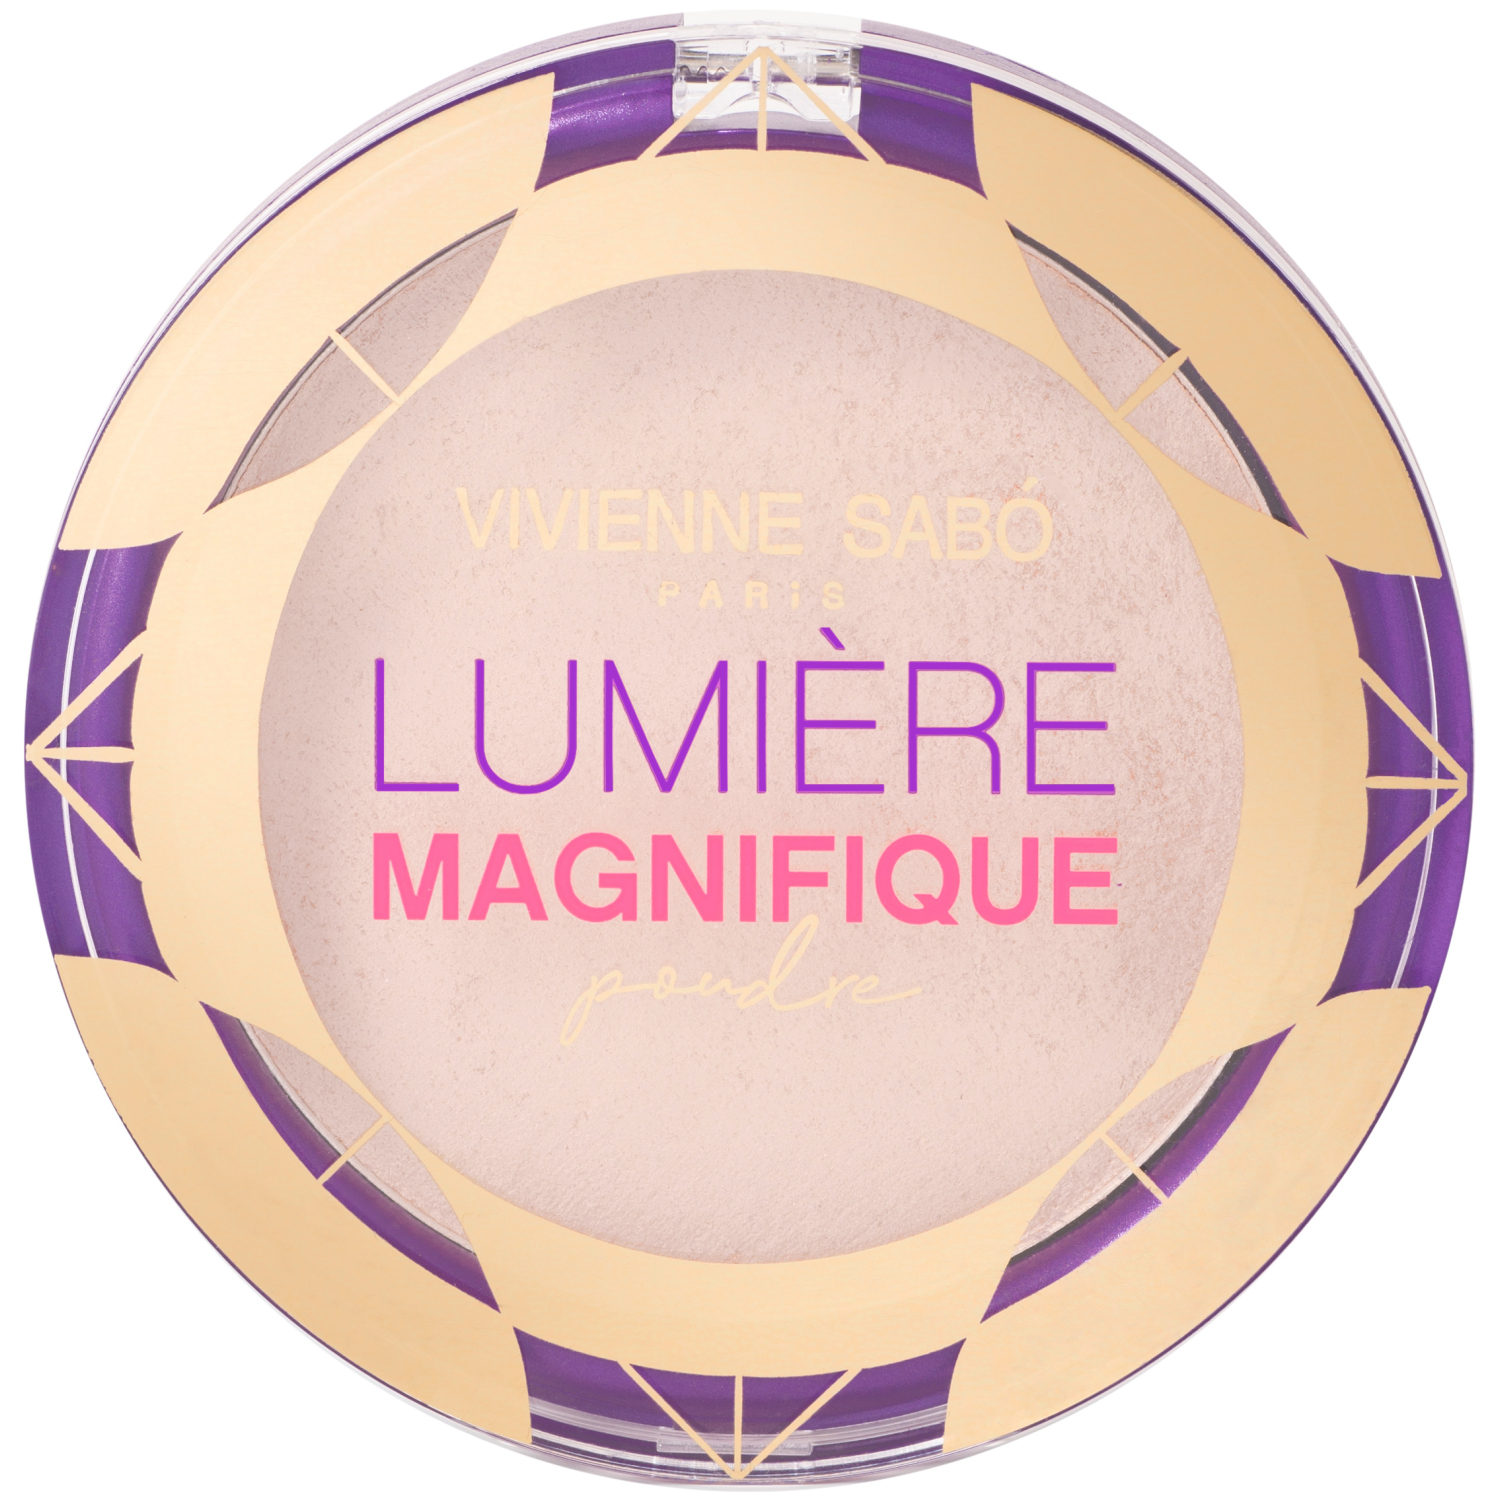 Пудра Vivienne Sabo Lumiere Magnifique, сияющая, бархатистая текстура, эффект мягкого фокуса, тон 01, светло-бежевый, 6гр. кисть косметическая 2 для тональной основы синтетический ворс